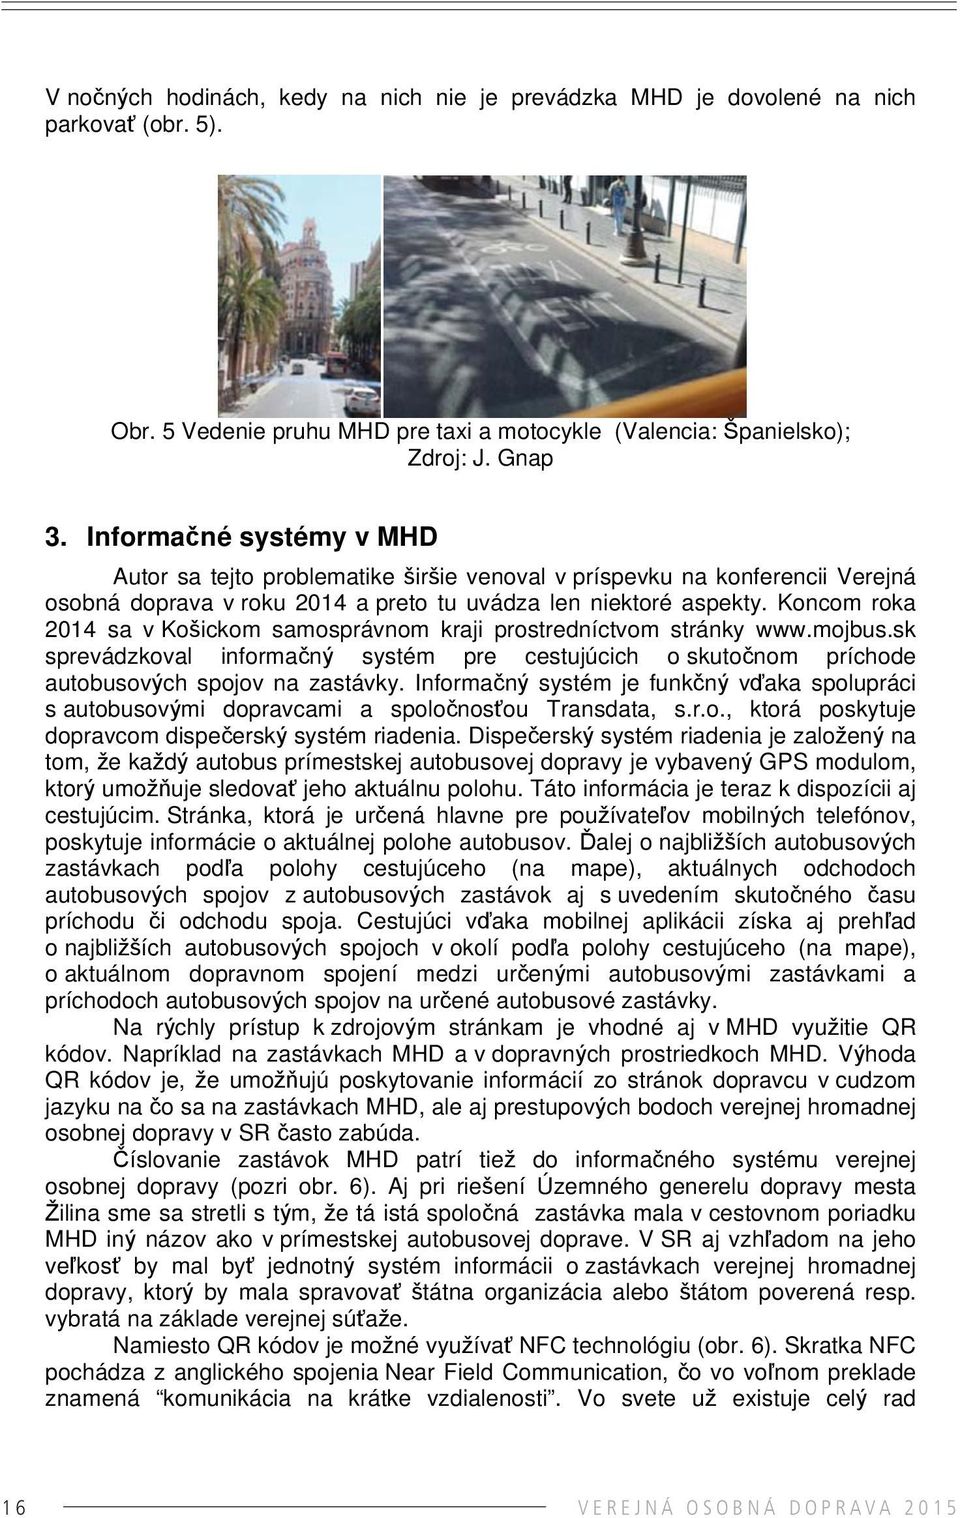 Koncom roka 2014 sa v Košickom samosprávnom kraji prostredníctvom stránky www.mojbus.sk sprevádzkoval informačný systém pre cestujúcich o skutočnom príchode autobusových spojov na zastávky.